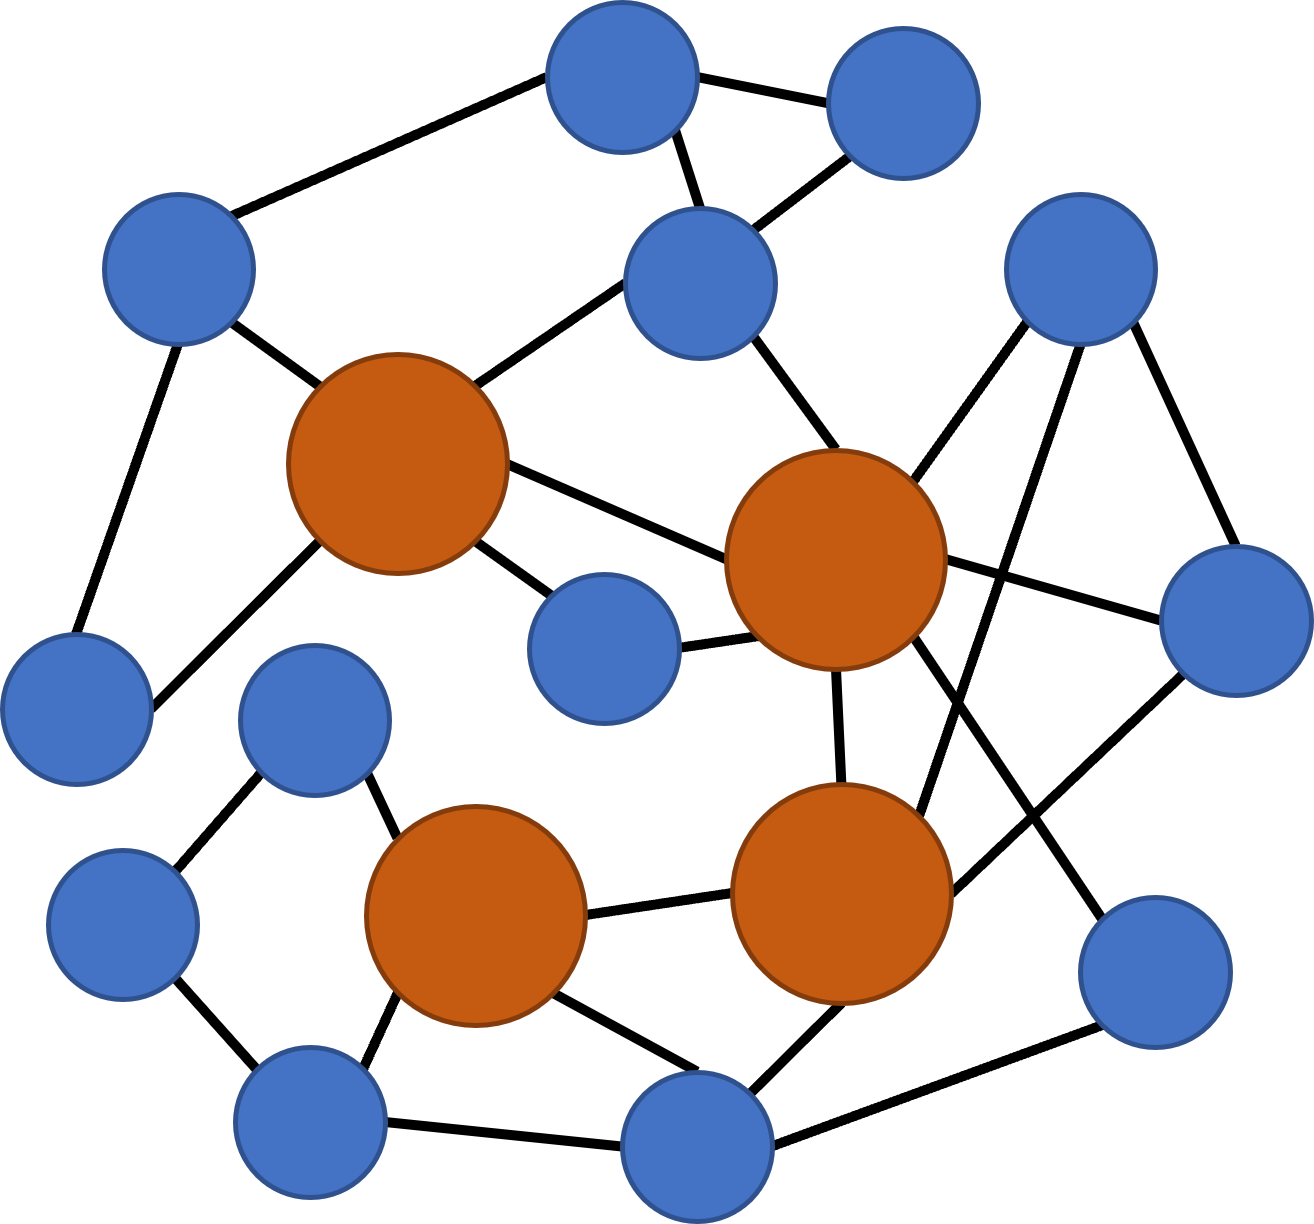 将开放世界游戏中的关卡地点抽象为由线段（流程路径）相连的节点，游戏的流程便可以被映射成数学中的图（graph）。具体而言，图中橙色的圆圈（节点）为主线剧情相关的关卡，而蓝色的圆圈（节点）则为支线剧情相关的关卡。